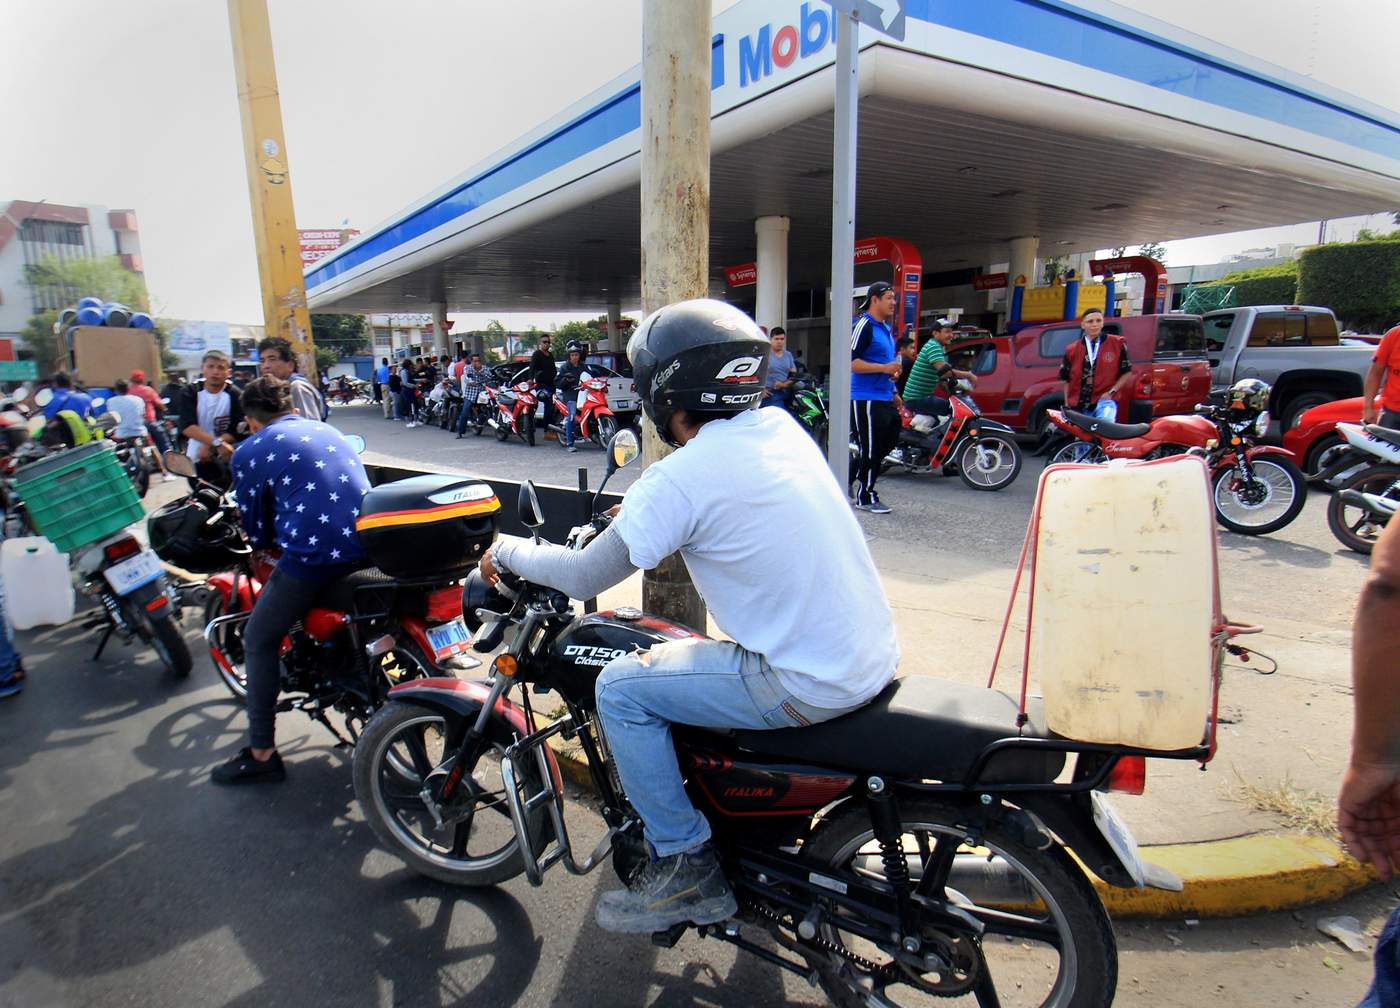 De manera gradual se ha ido restableciendo el abasto de combustible en la entidad, indicó el gobernador Diego Sinhue Rodríguez Vallejo, al señalar que en Guanajuato hay cada vez más gasolineras abiertas. (EFE)